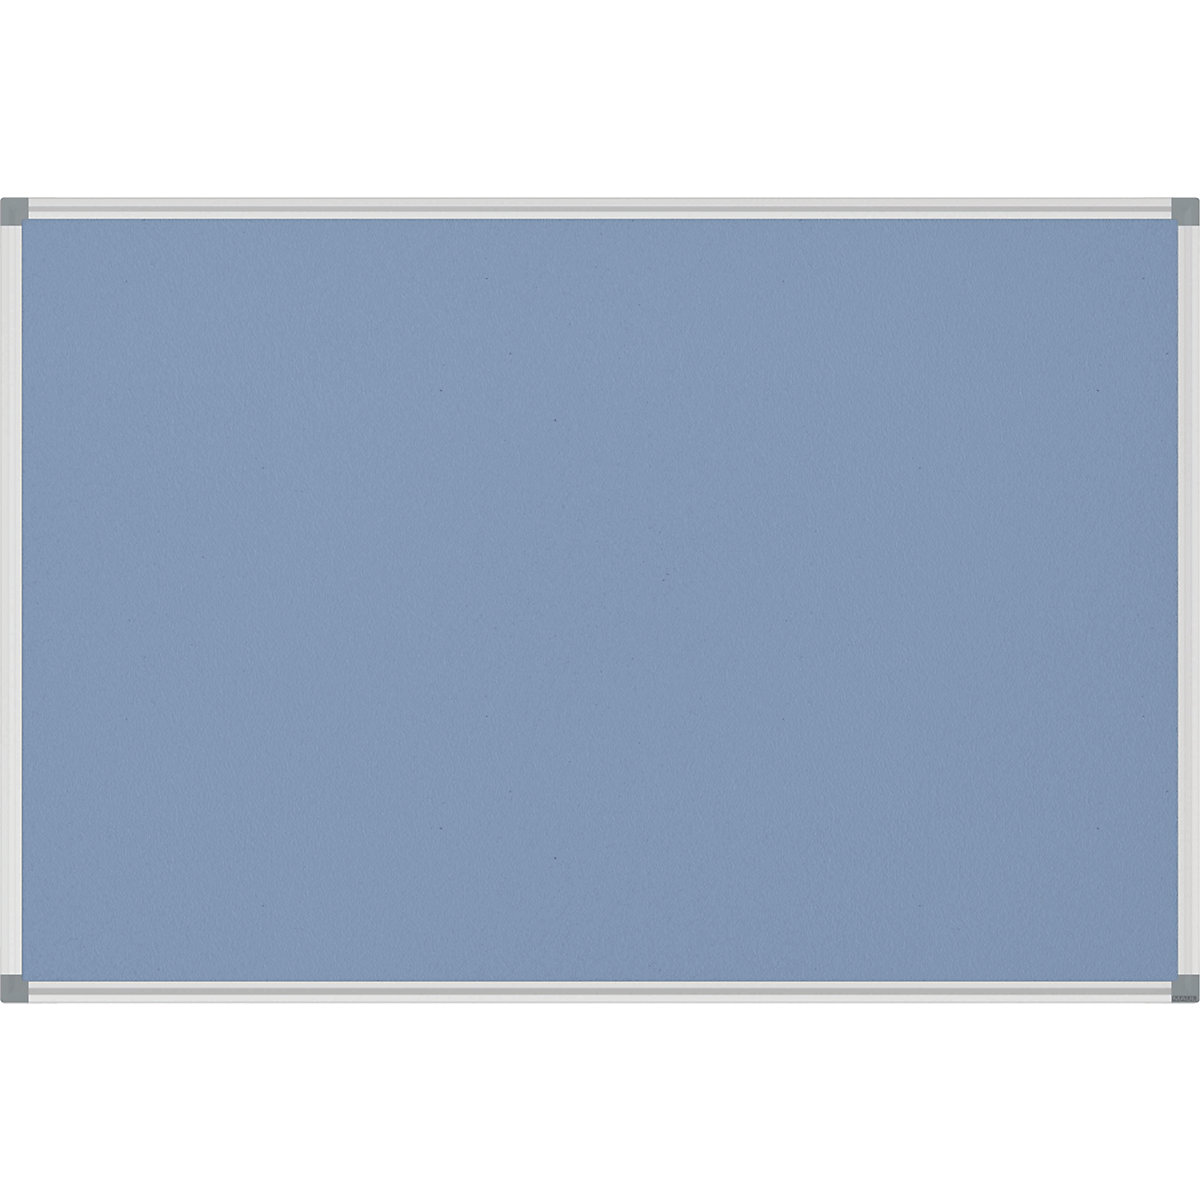  QRT2363  Tableau d'affichage fermé en liège, non éclairé,  Quartet pour usage intérieur, 1 porte, 3 pi x 2 pi, cadre aluminium